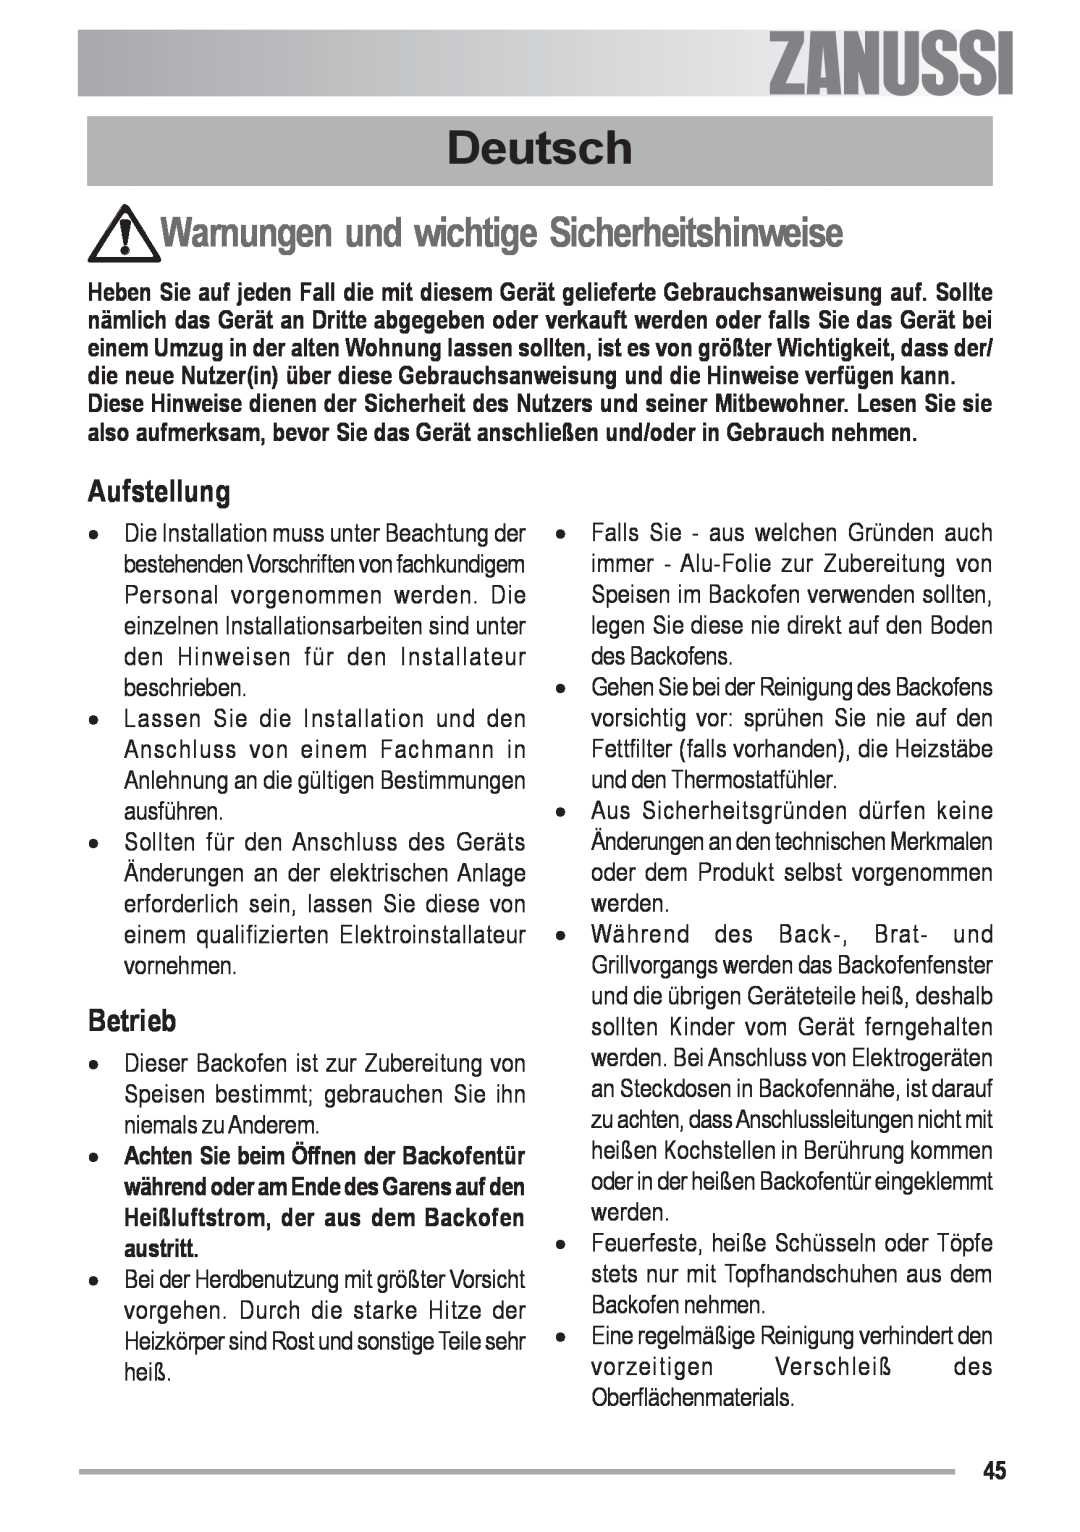 Zanussi ZYB 590 XL, ZYB 591 XL manual Deutsch, Warnungen und wichtige Sicherheitshinweise, Aufstellung, Betrieb 